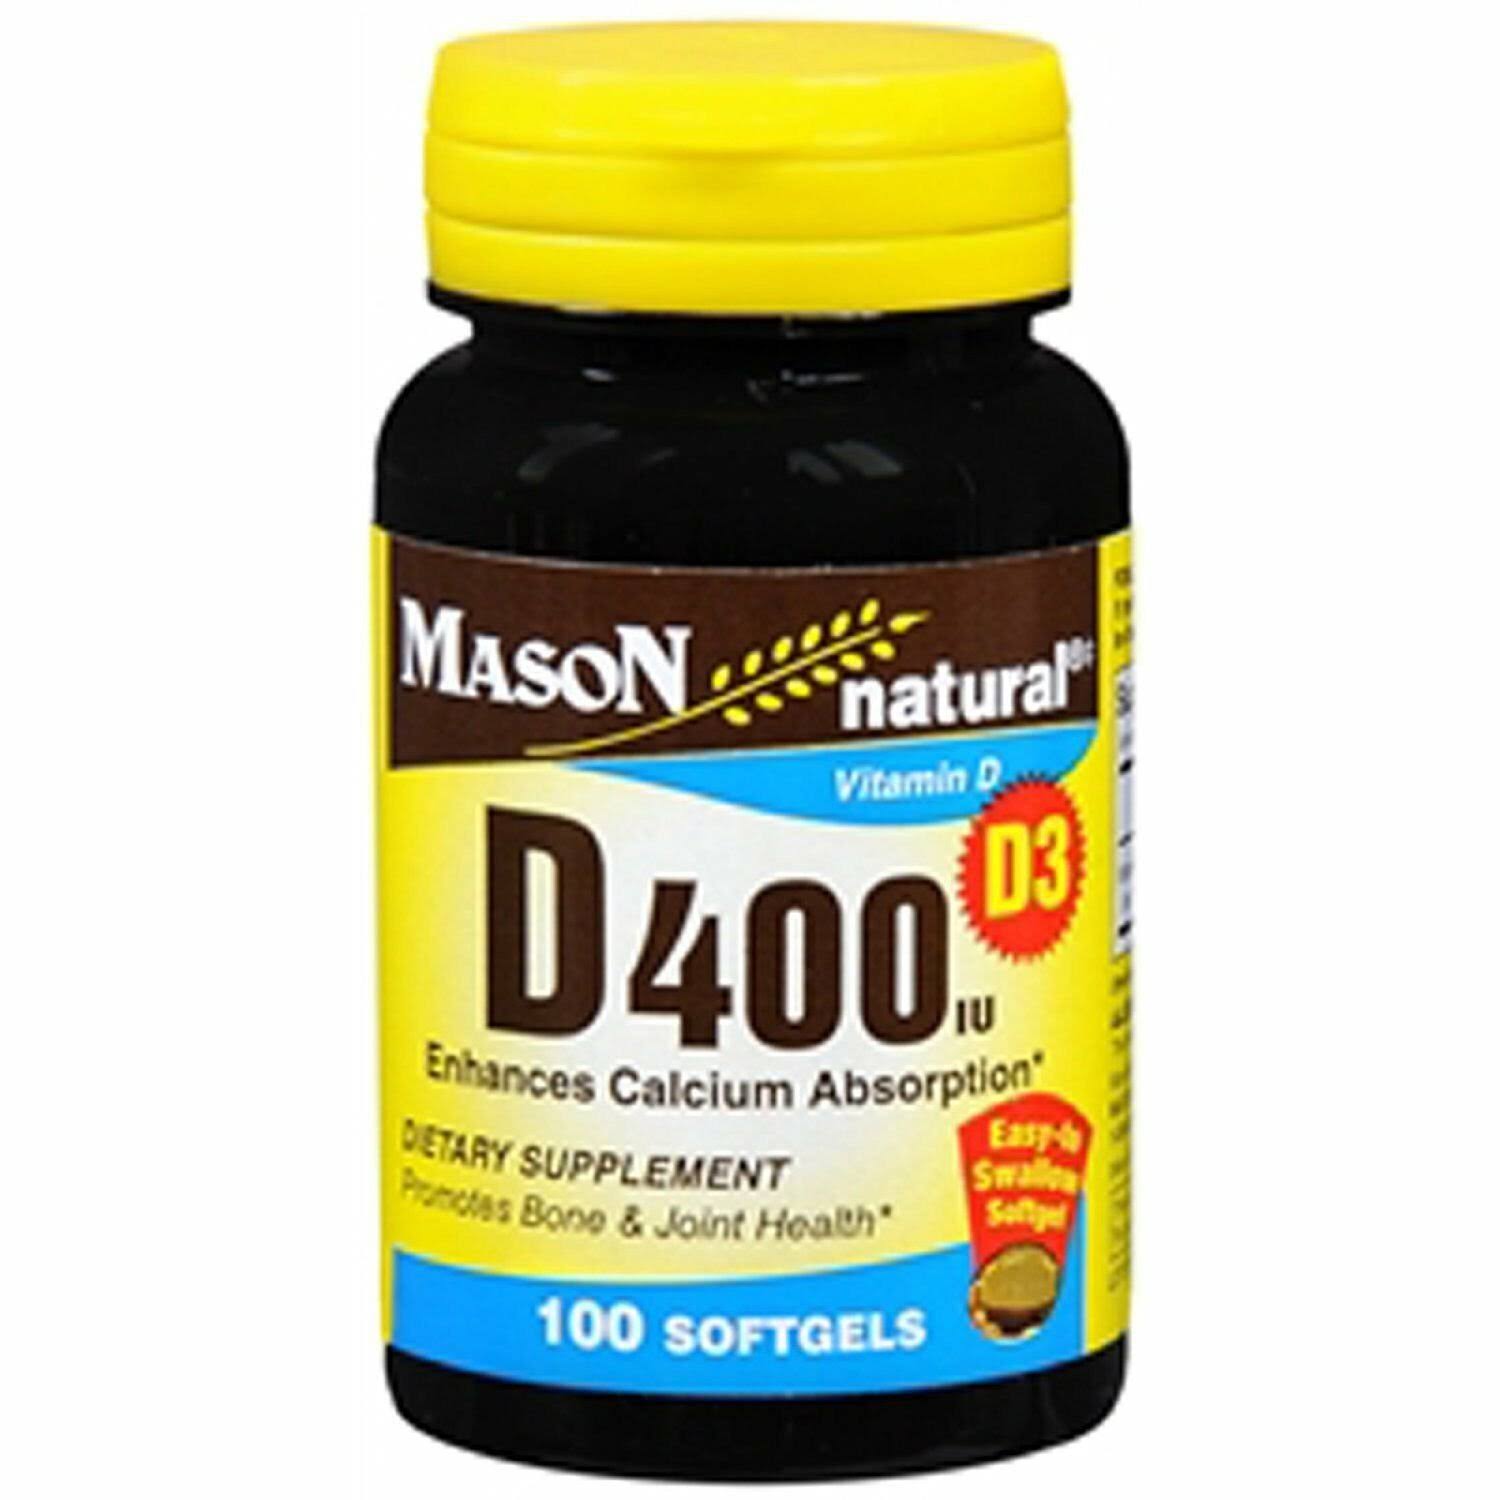 Mason Natural Vitamin D 400 IU Supplement - 100 Softgels